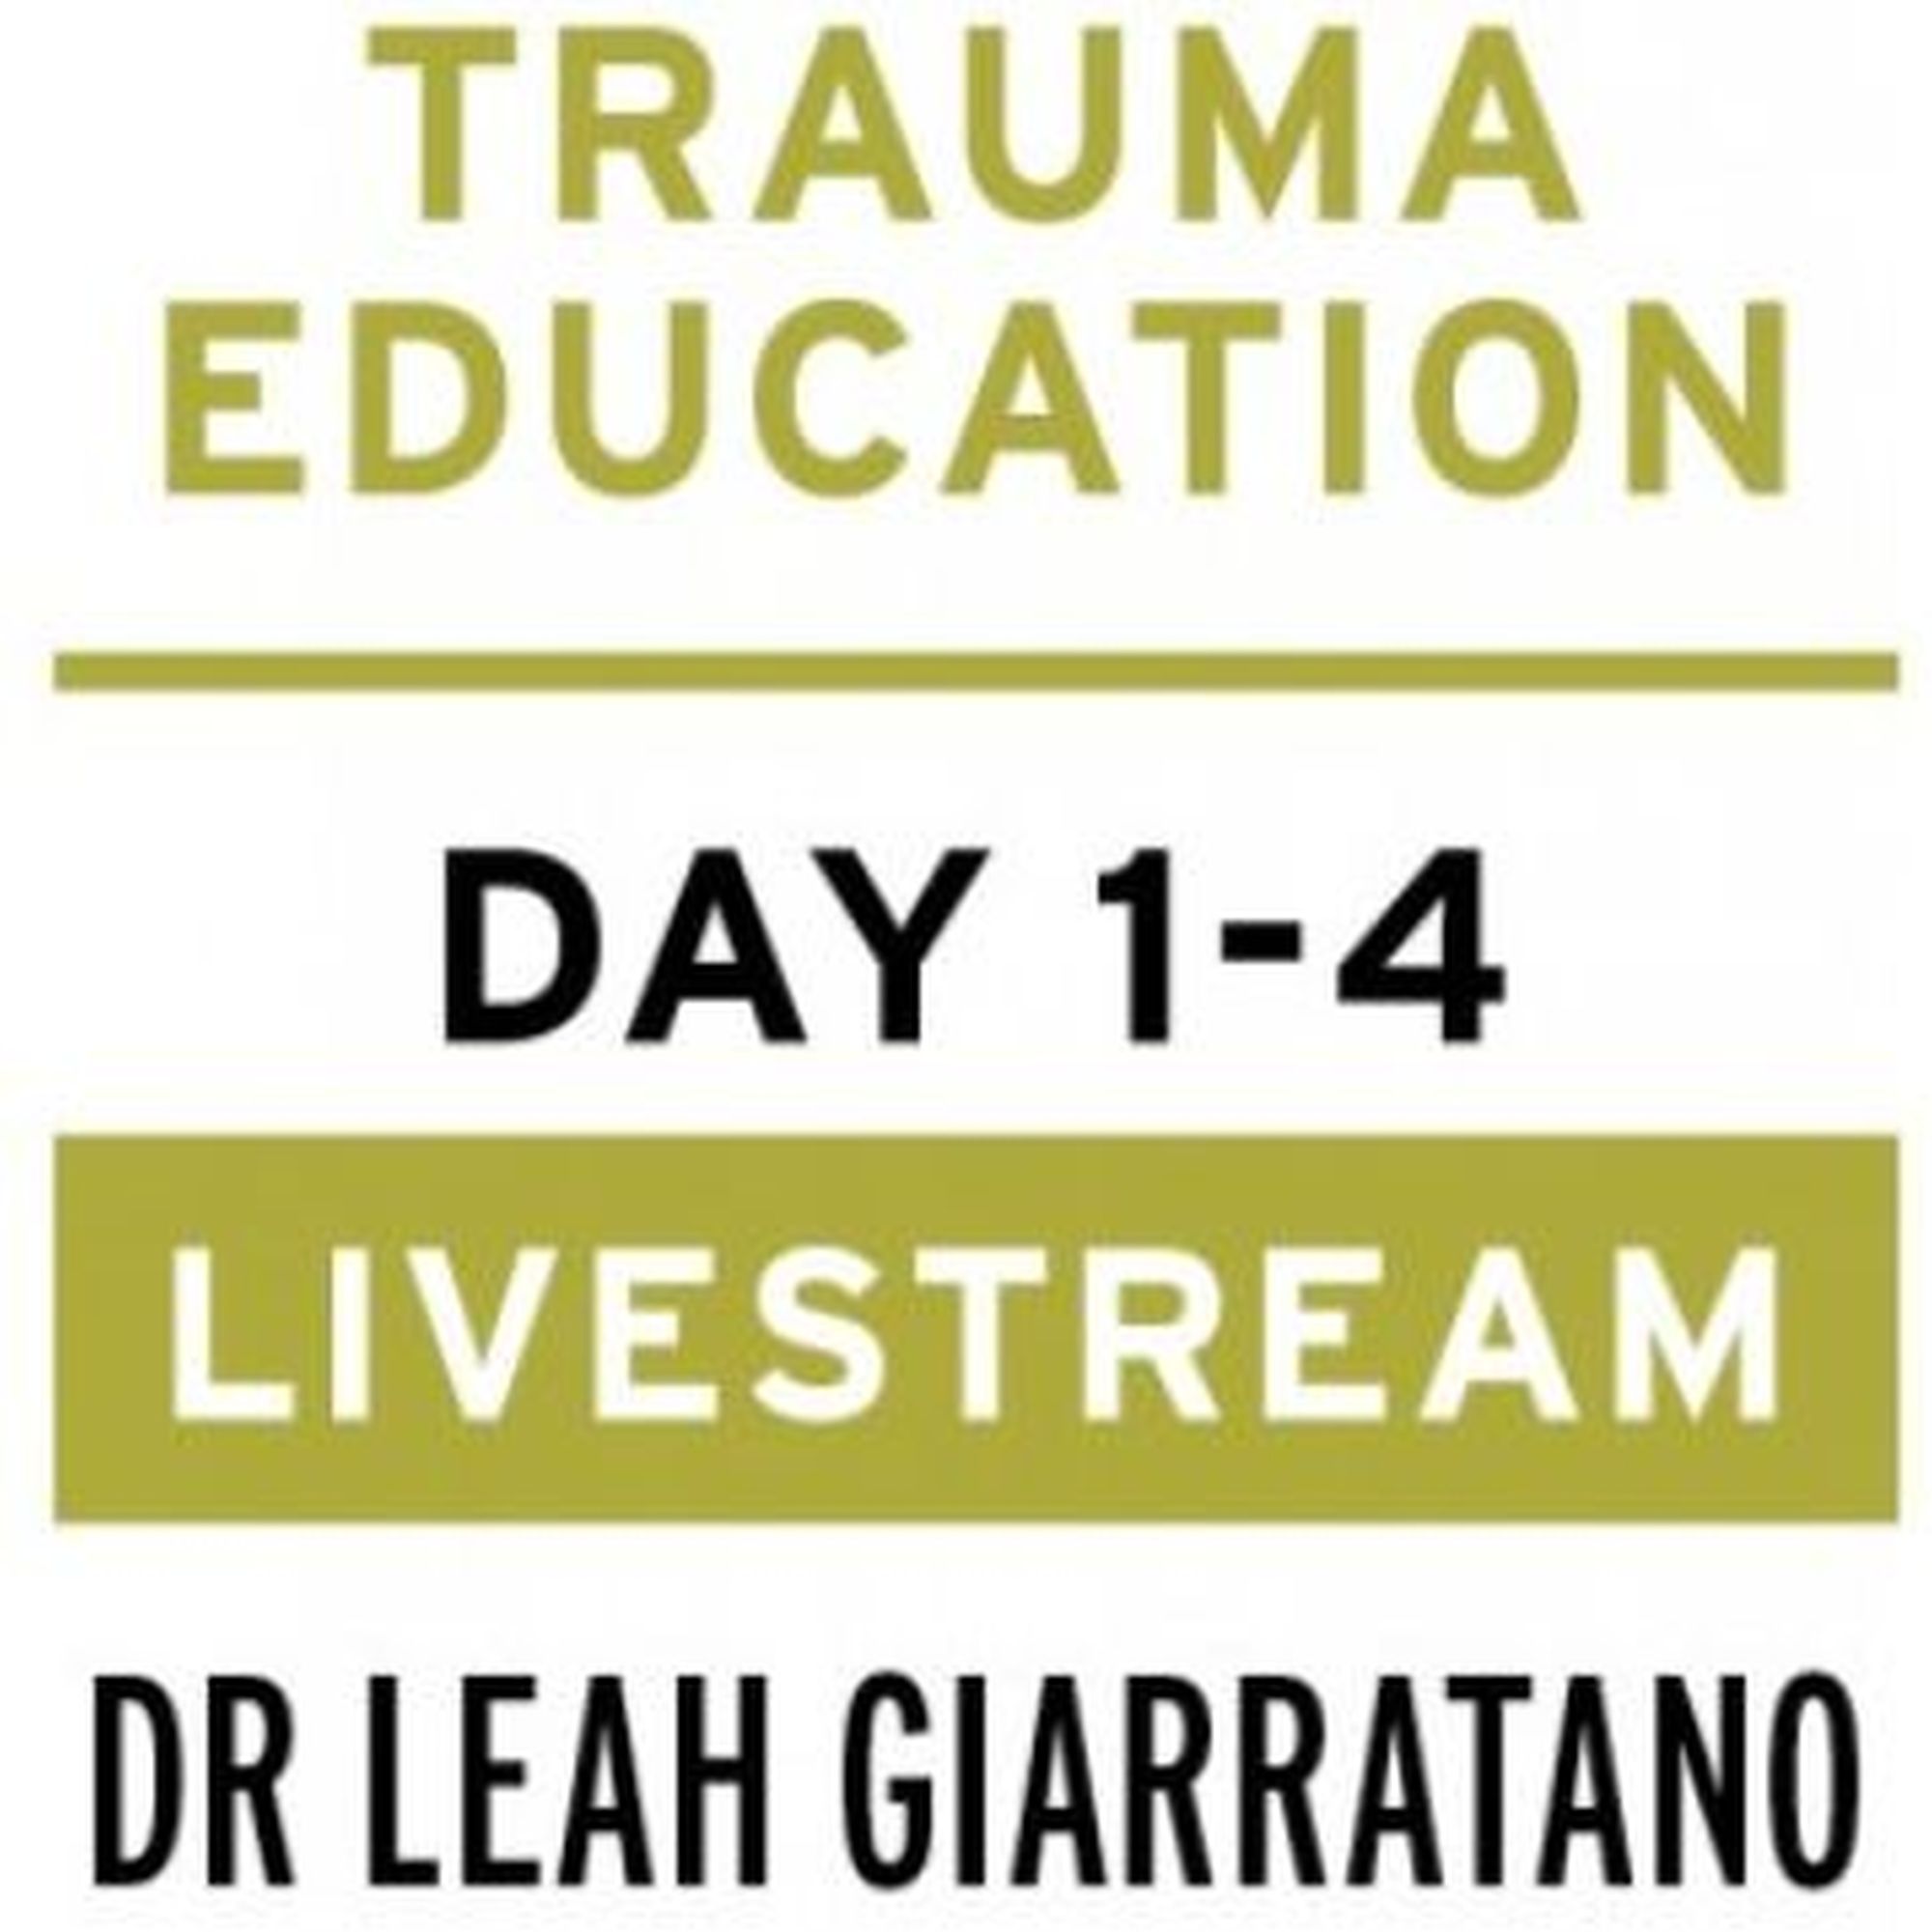 Treating PTSD + Complex Trauma with Dr Leah Giarratano 21-22 and 28-29 September 2023 Livestream - Antrim, Online Event